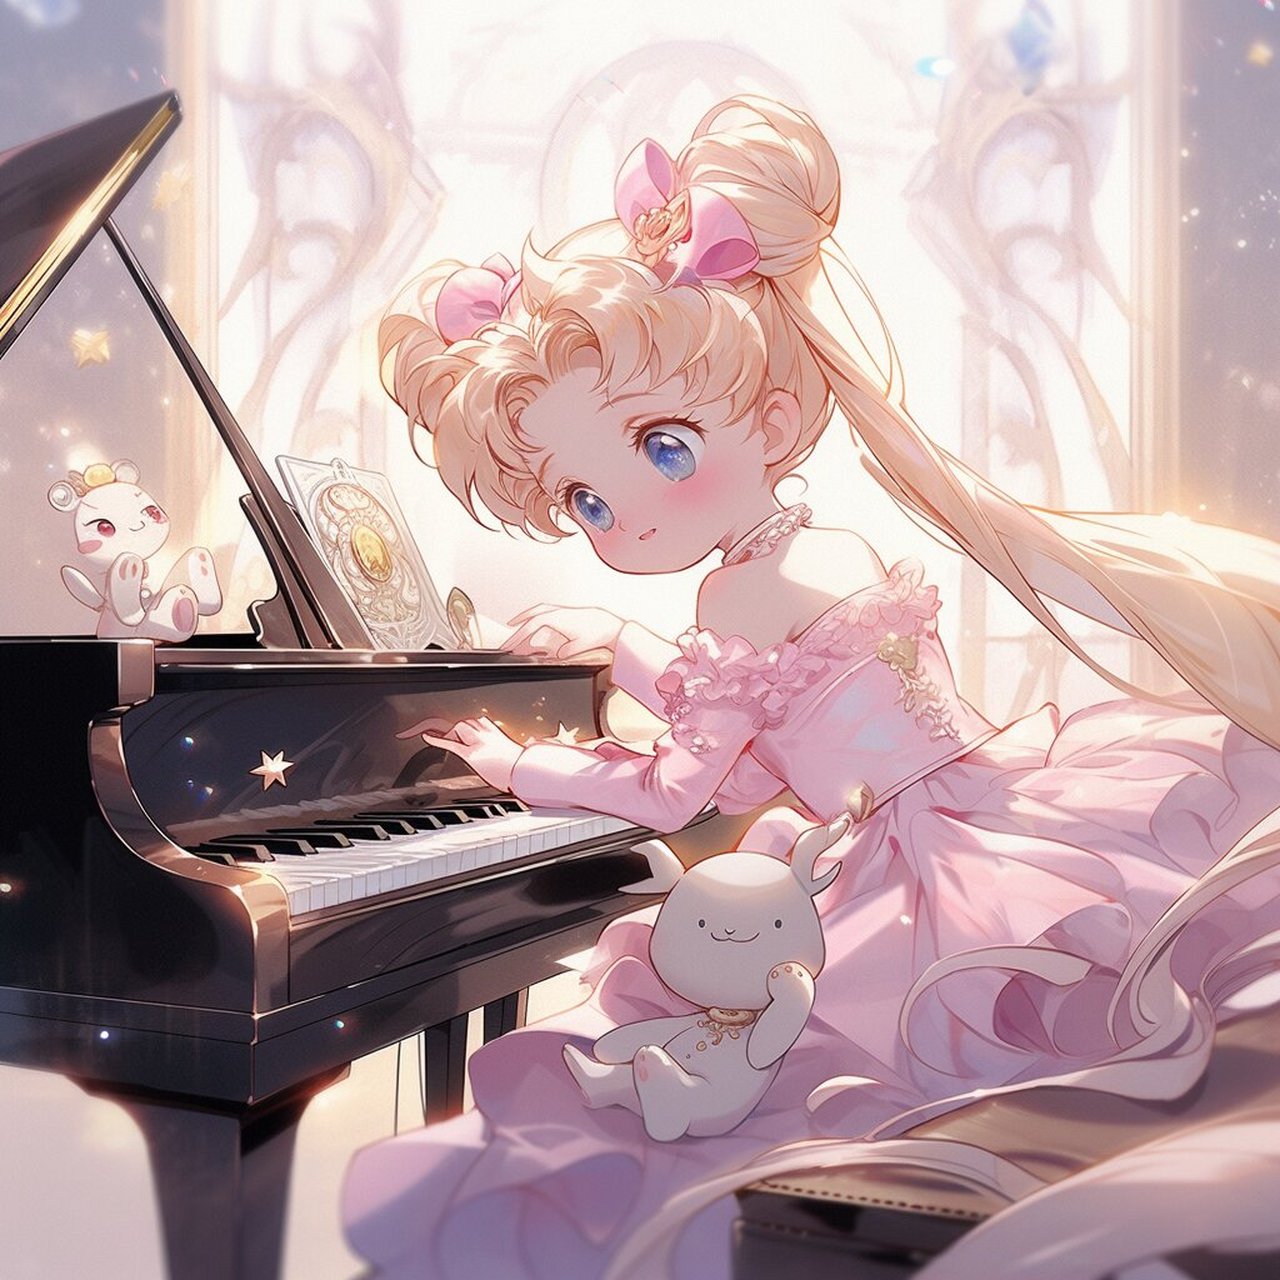 会弹钢琴的女孩子真是太优秀了 坐在大钢琴前,小女孩优雅地双手舞动在